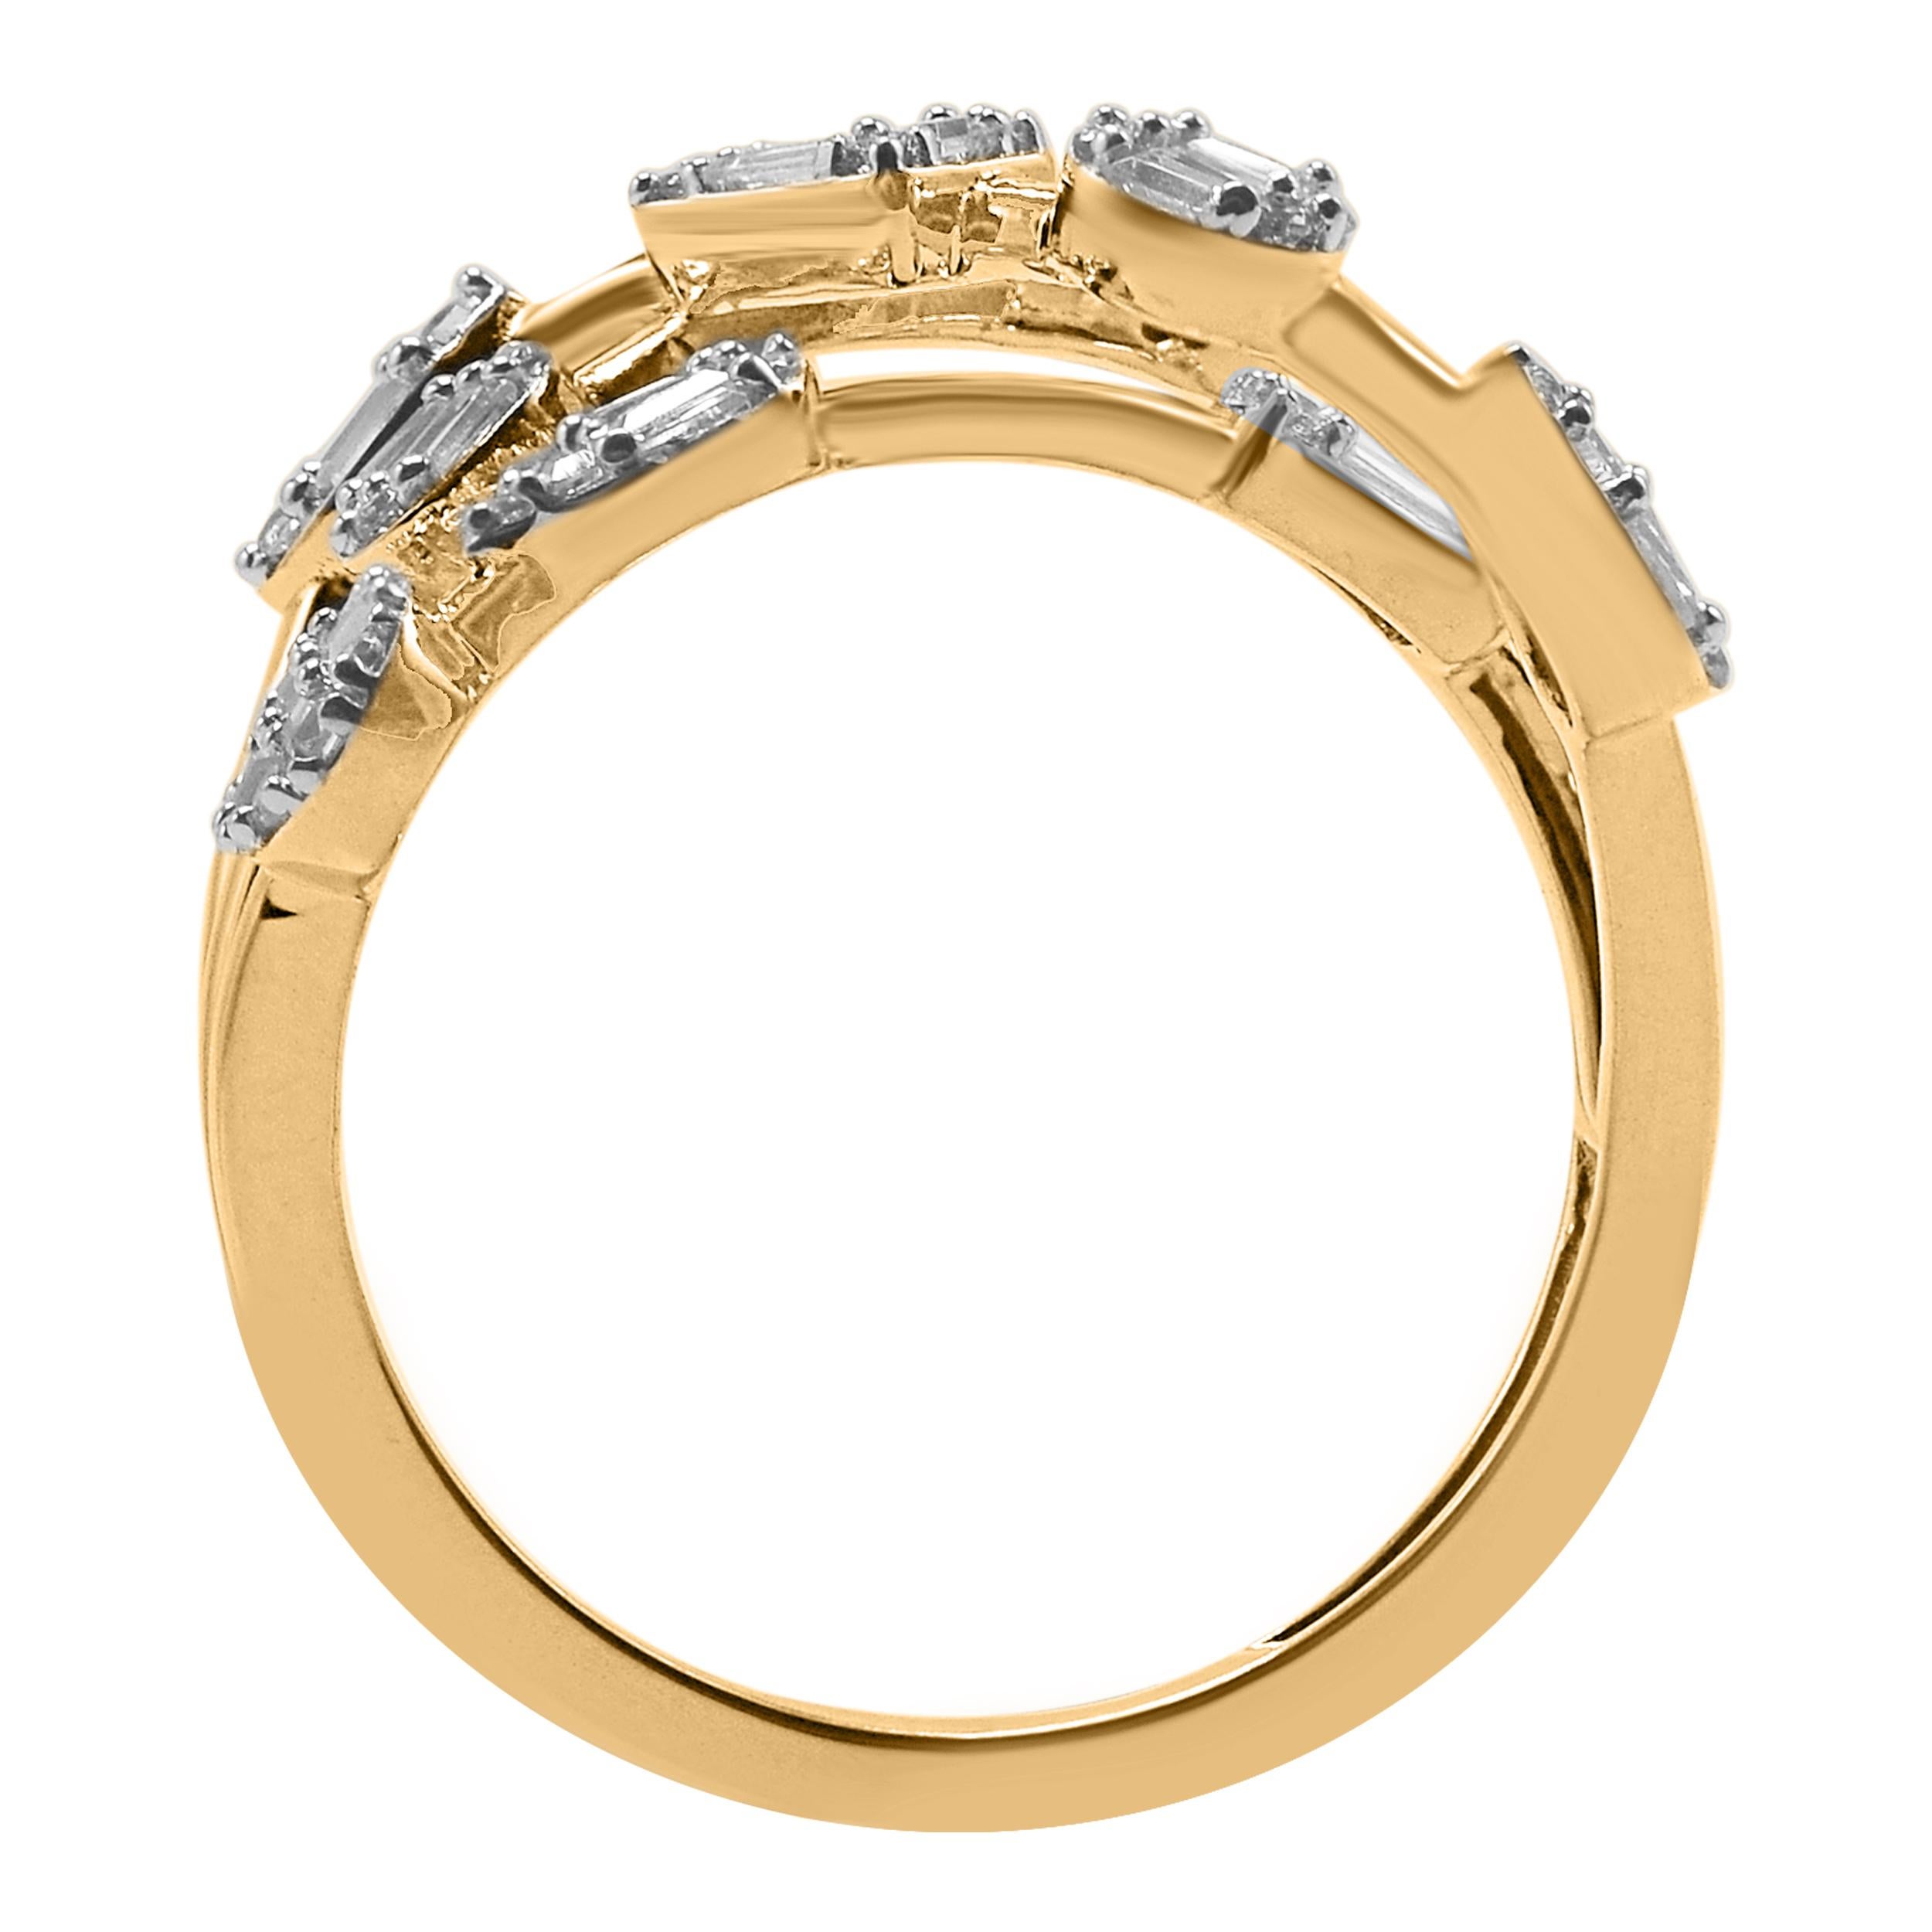 Bringen Sie Charme in Ihren Look mit diesem Diamantring. Dieser Ring ist wunderschön aus 14 Karat Gelbgold gefertigt und mit 71 runden Diamanten im Brillantschliff, Einzelschliff und Baguette-Diamanten in Zackenfassung besetzt. Das Gesamtgewicht der